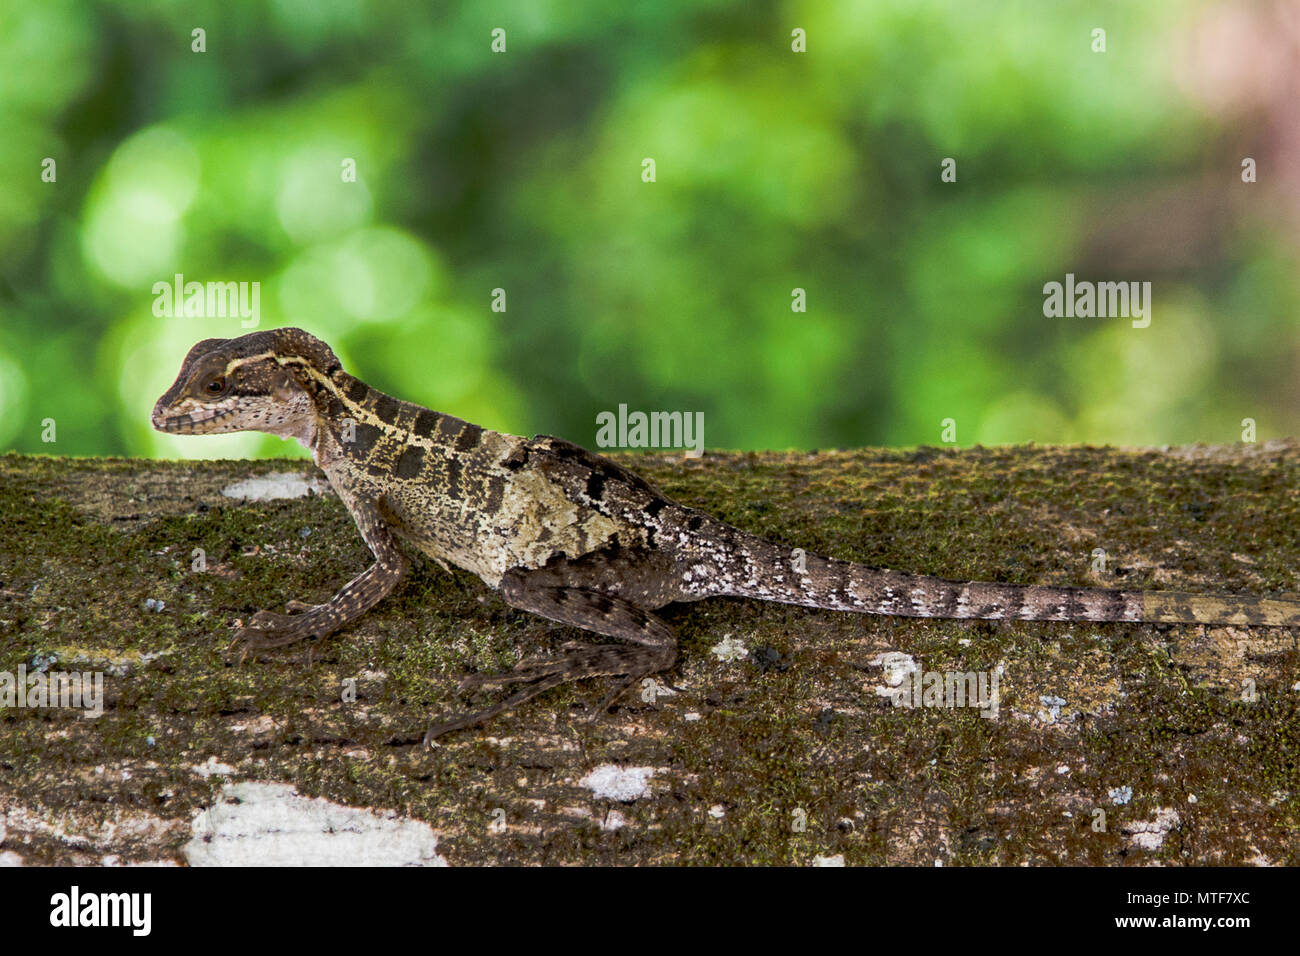 Lizard in Costa Rica Stock Photo